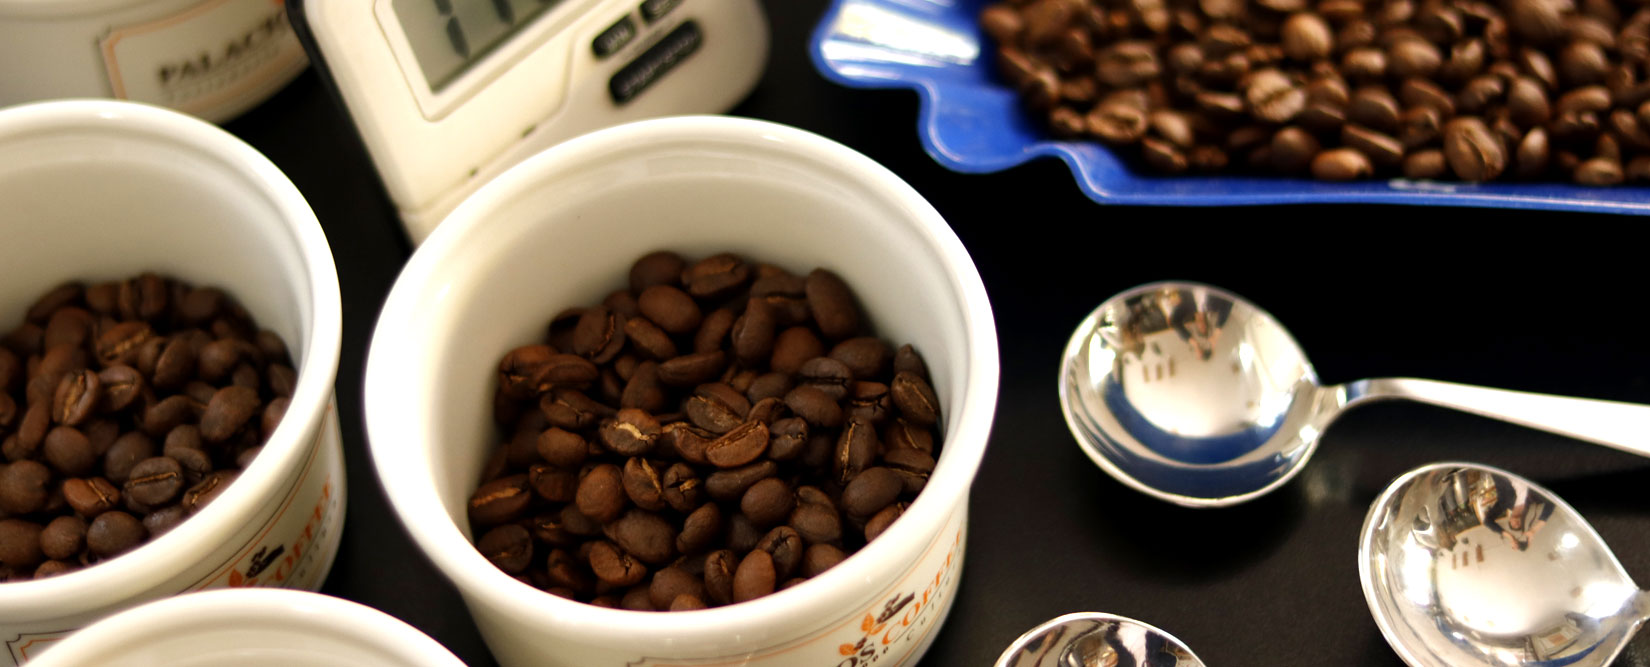 Accesorios y Métodos para café - Palacios Coffee : Palacios Coffee